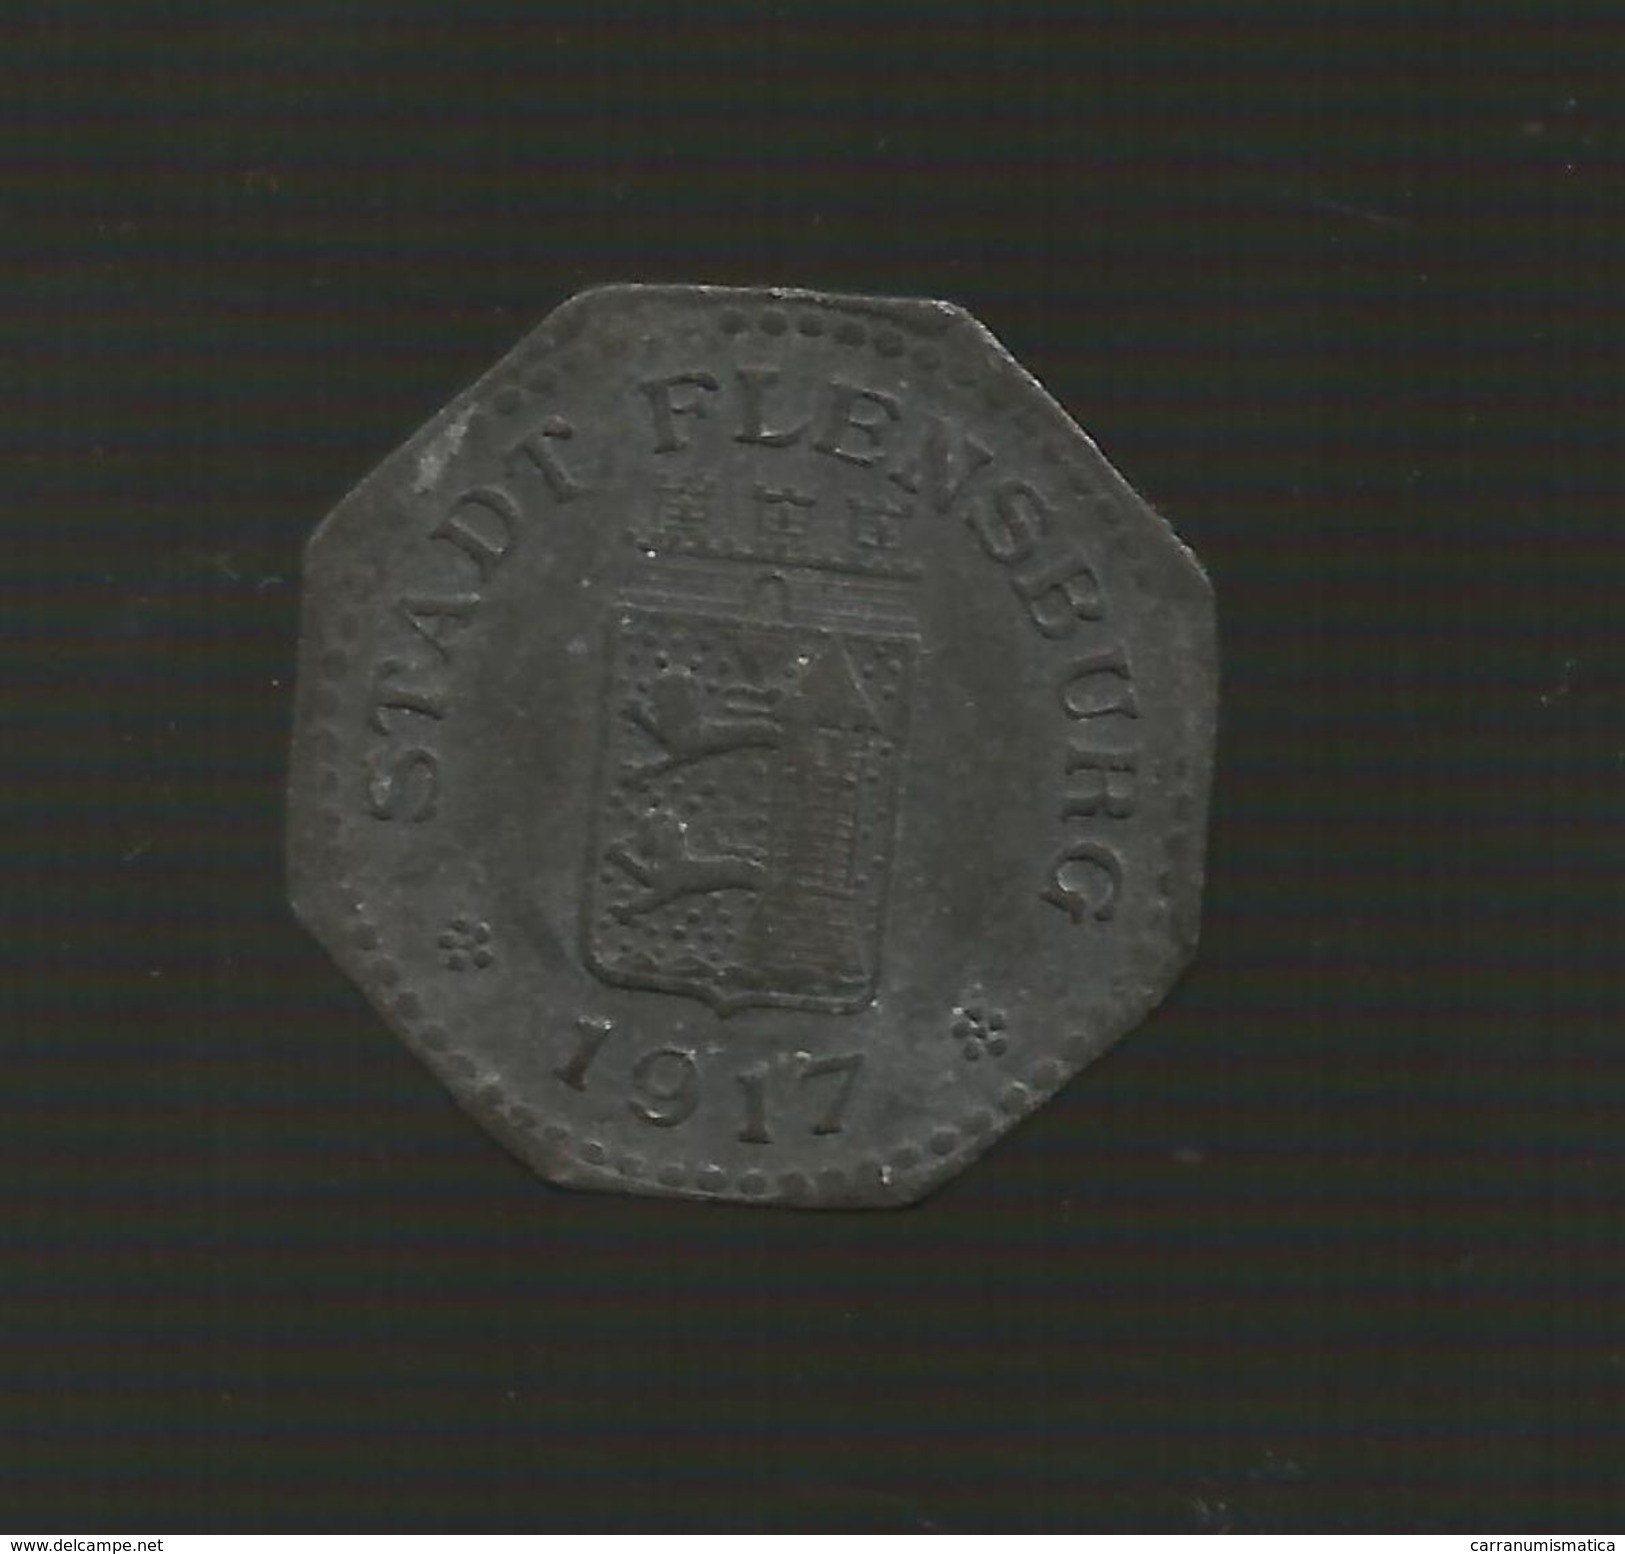 DEUTSCHLAND / GERMANY - NOTGELD - Stadt FLENSBURG - 10 Pfennig (1918) Zink / Zinc / Zinco - Notgeld